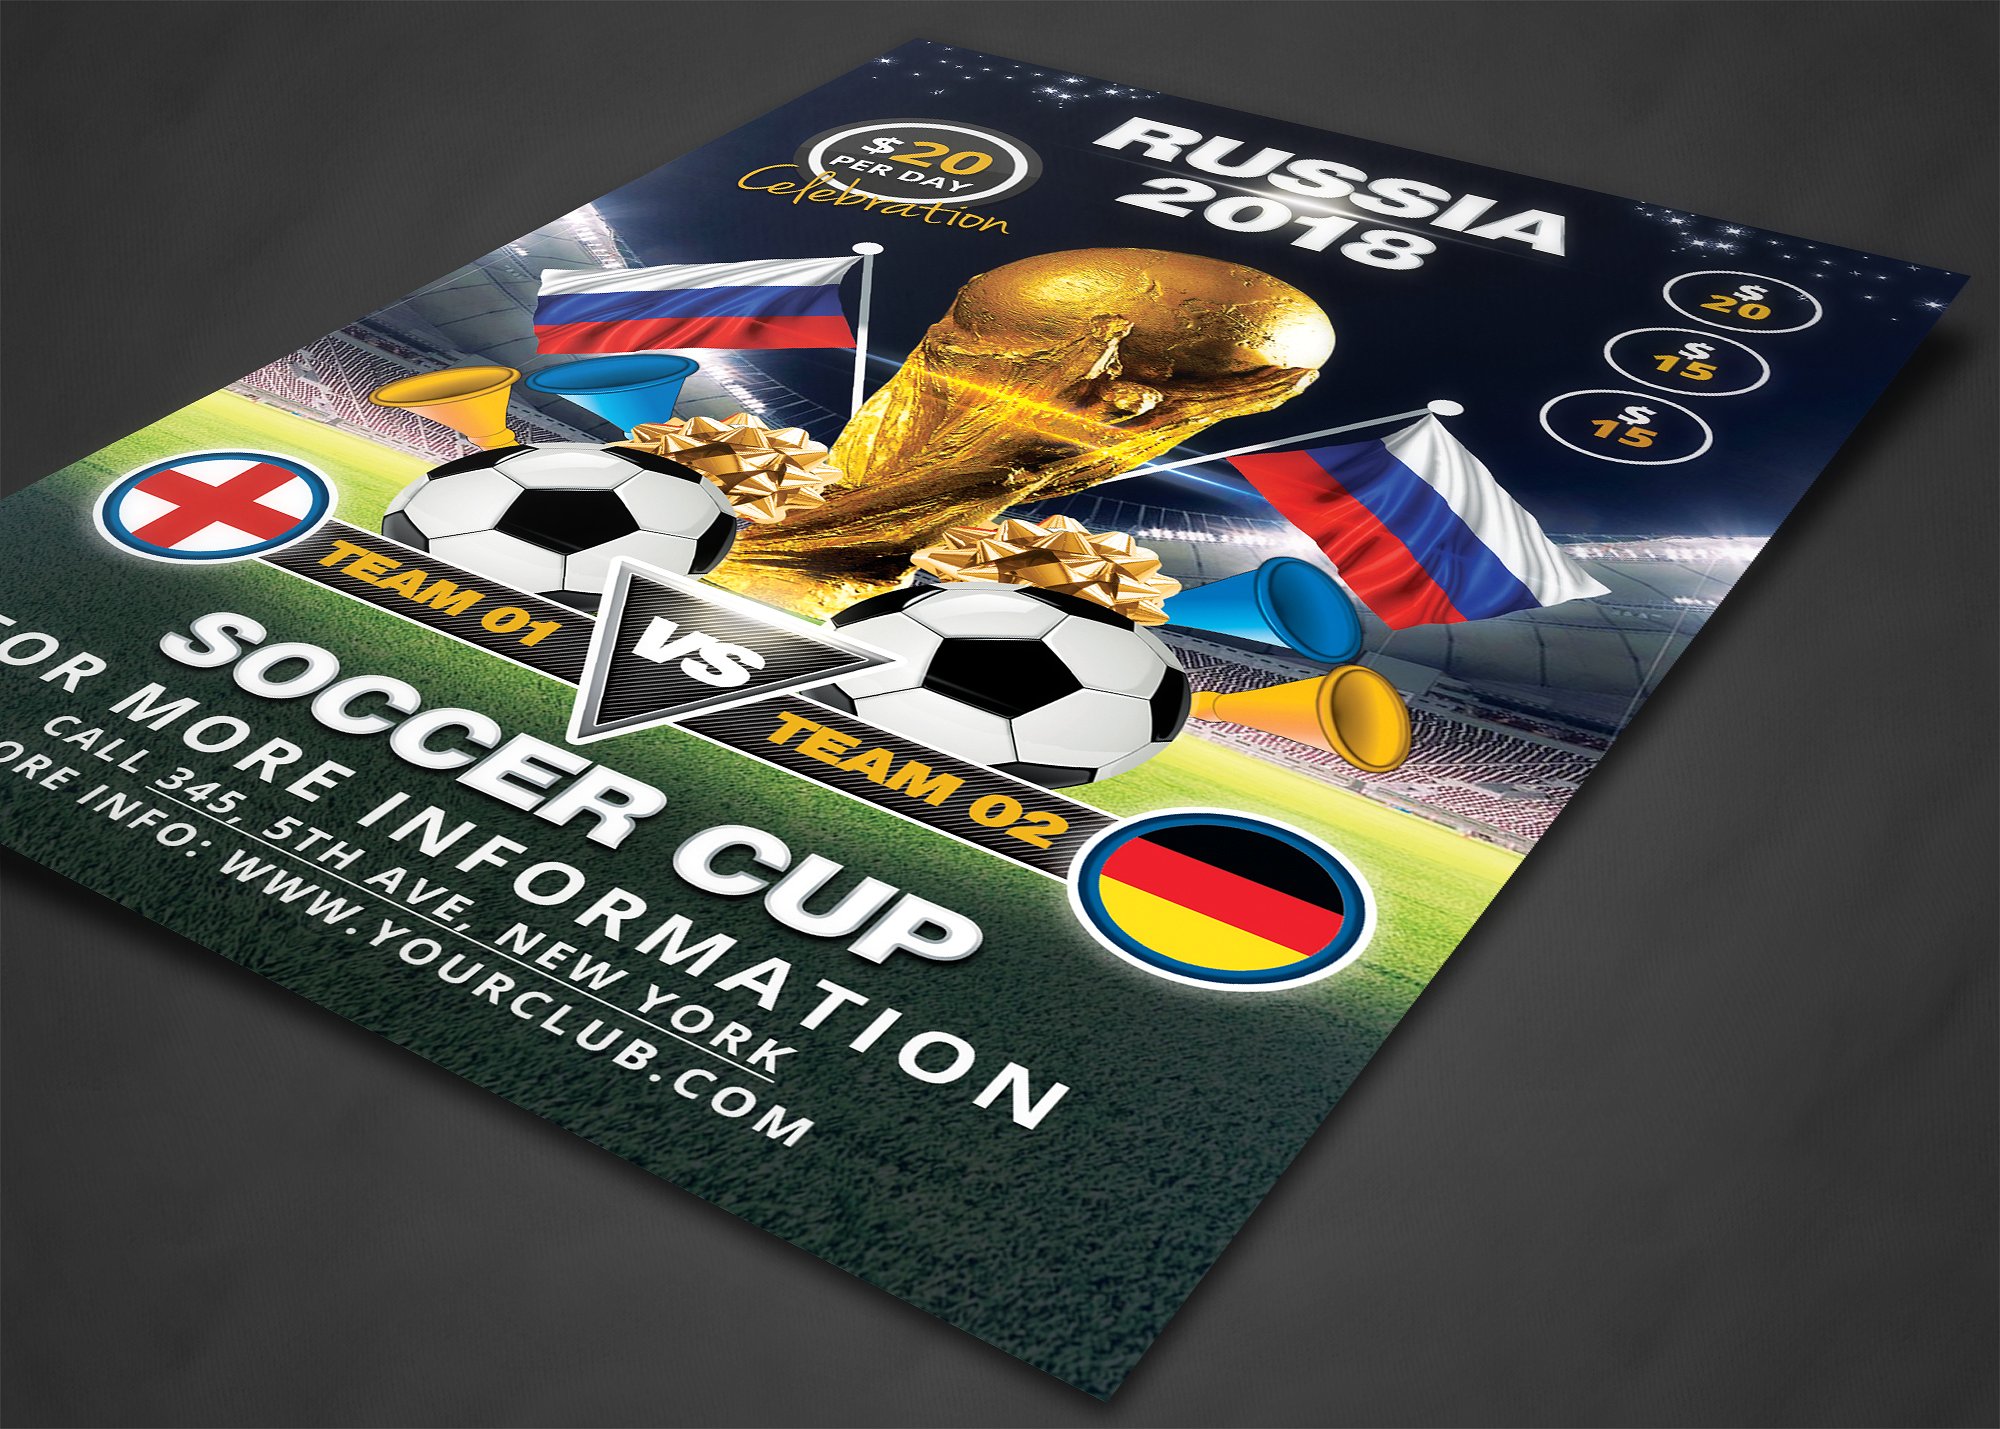 足球杯比赛宣传海报设计单页模板 Soccer Cup Flyer Template插图(1)